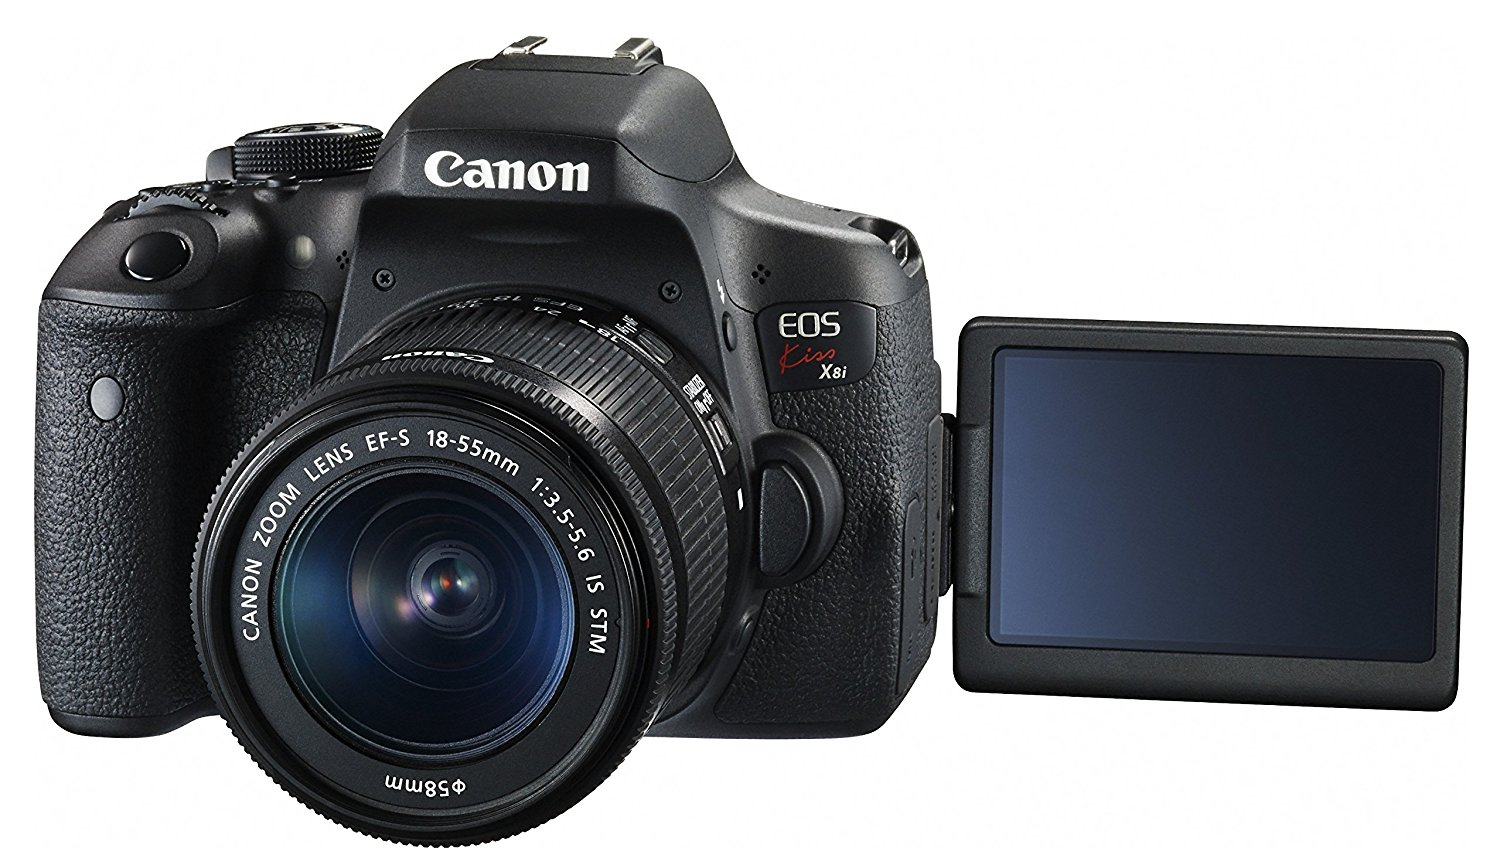 【Canon】デジタル一眼レフカメラ EOS Kiss X8i |開業・開店・移転祝いにWebカタログギフト「オフィスギフト」